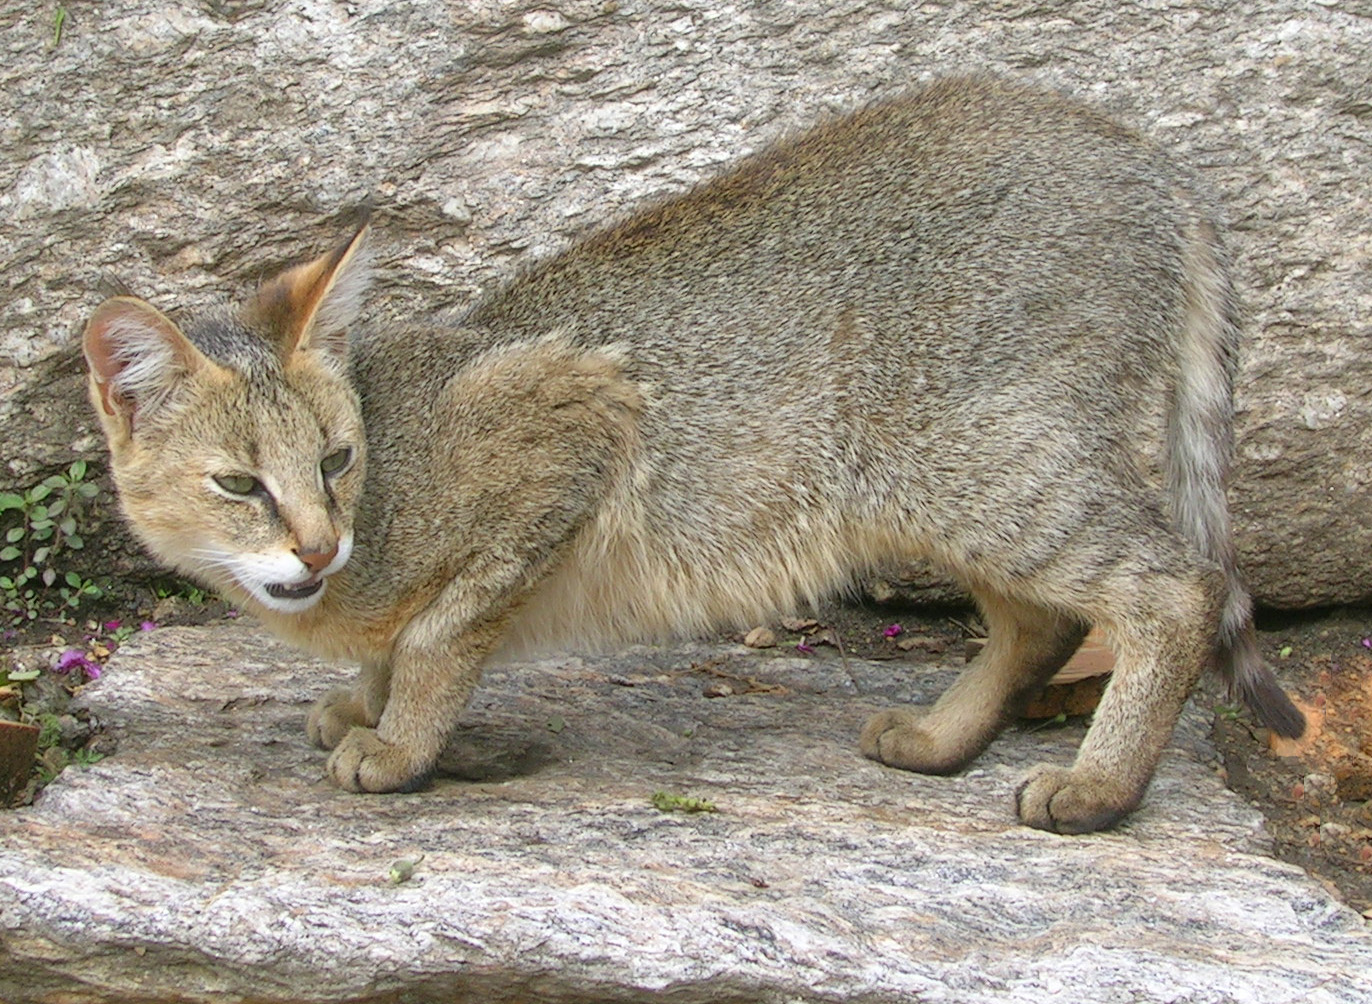 Jungle cat - Wikipedia